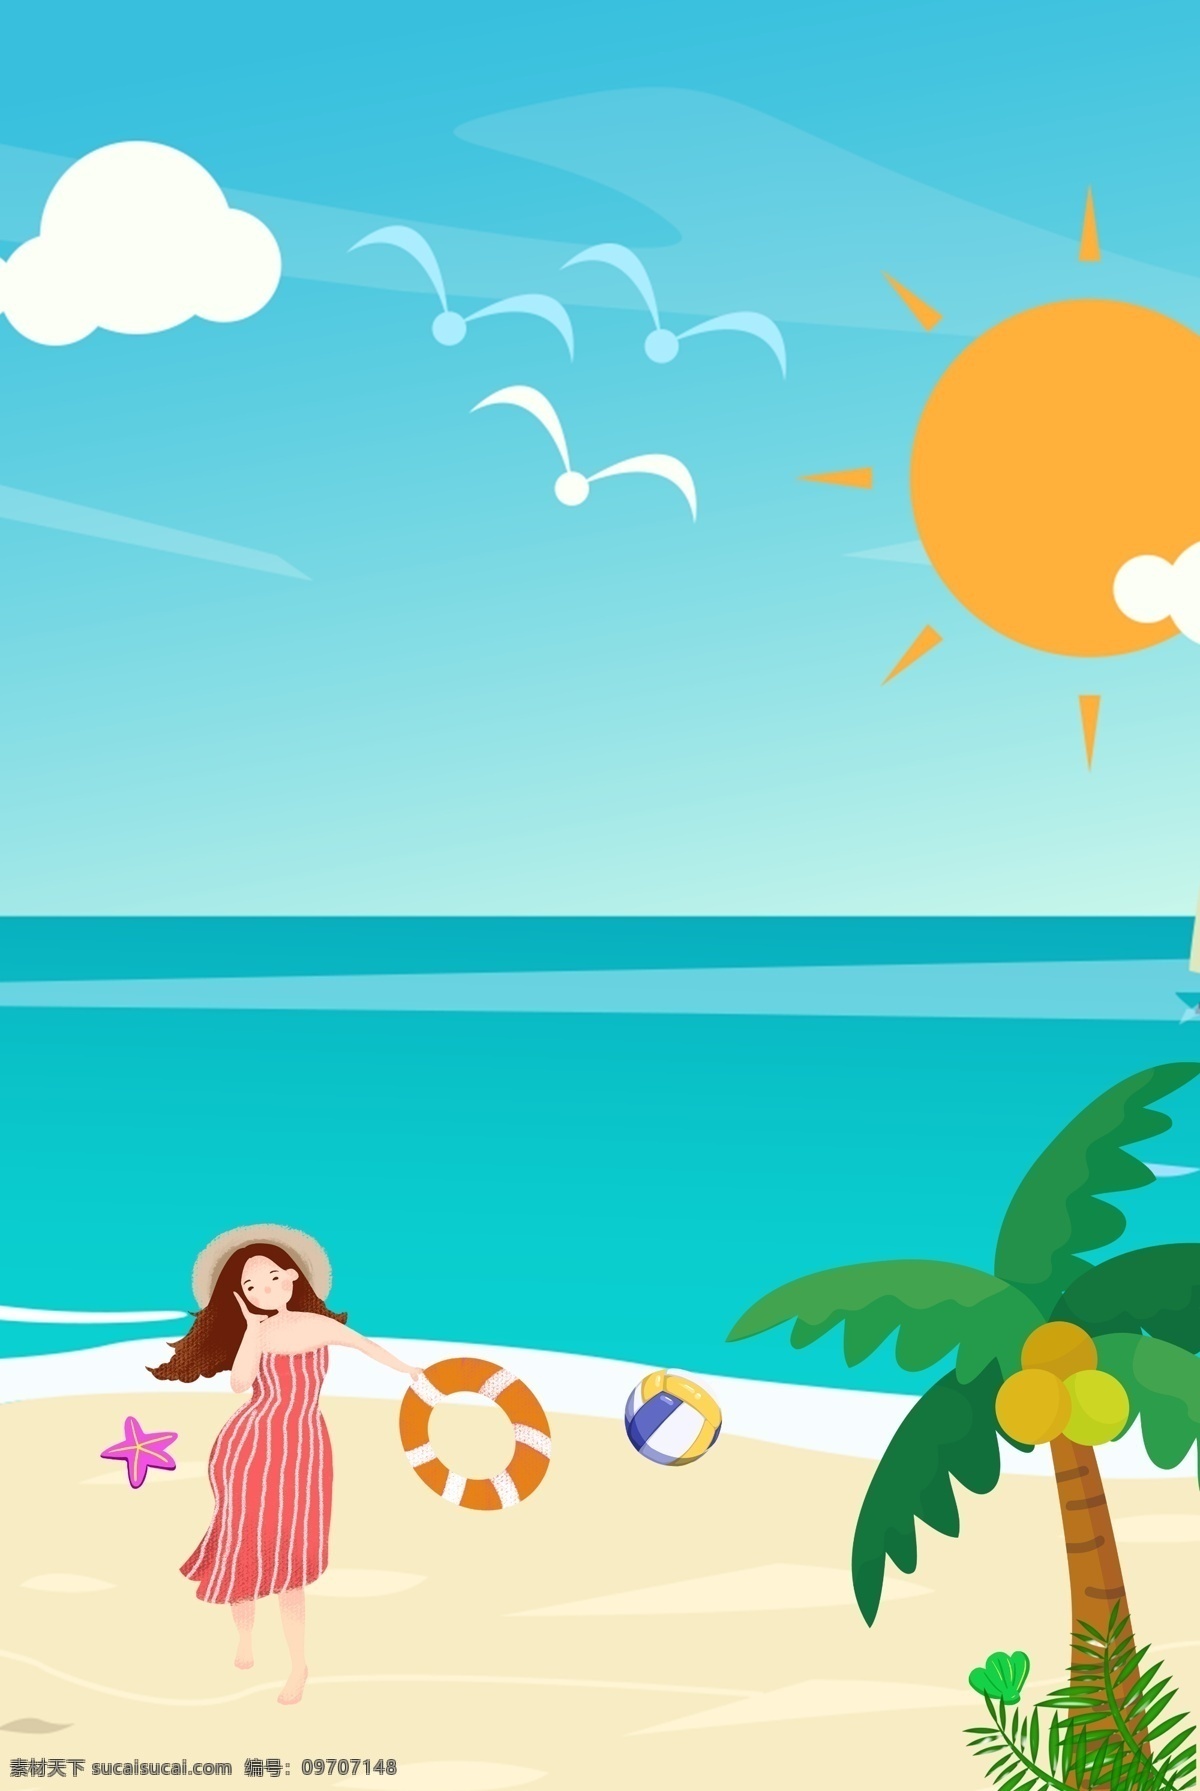 夏日 海滩 少女 背景 图 女人 蓝天 白云 太阳 鸟 沙滩 海 树 草 海贝 海星 排球